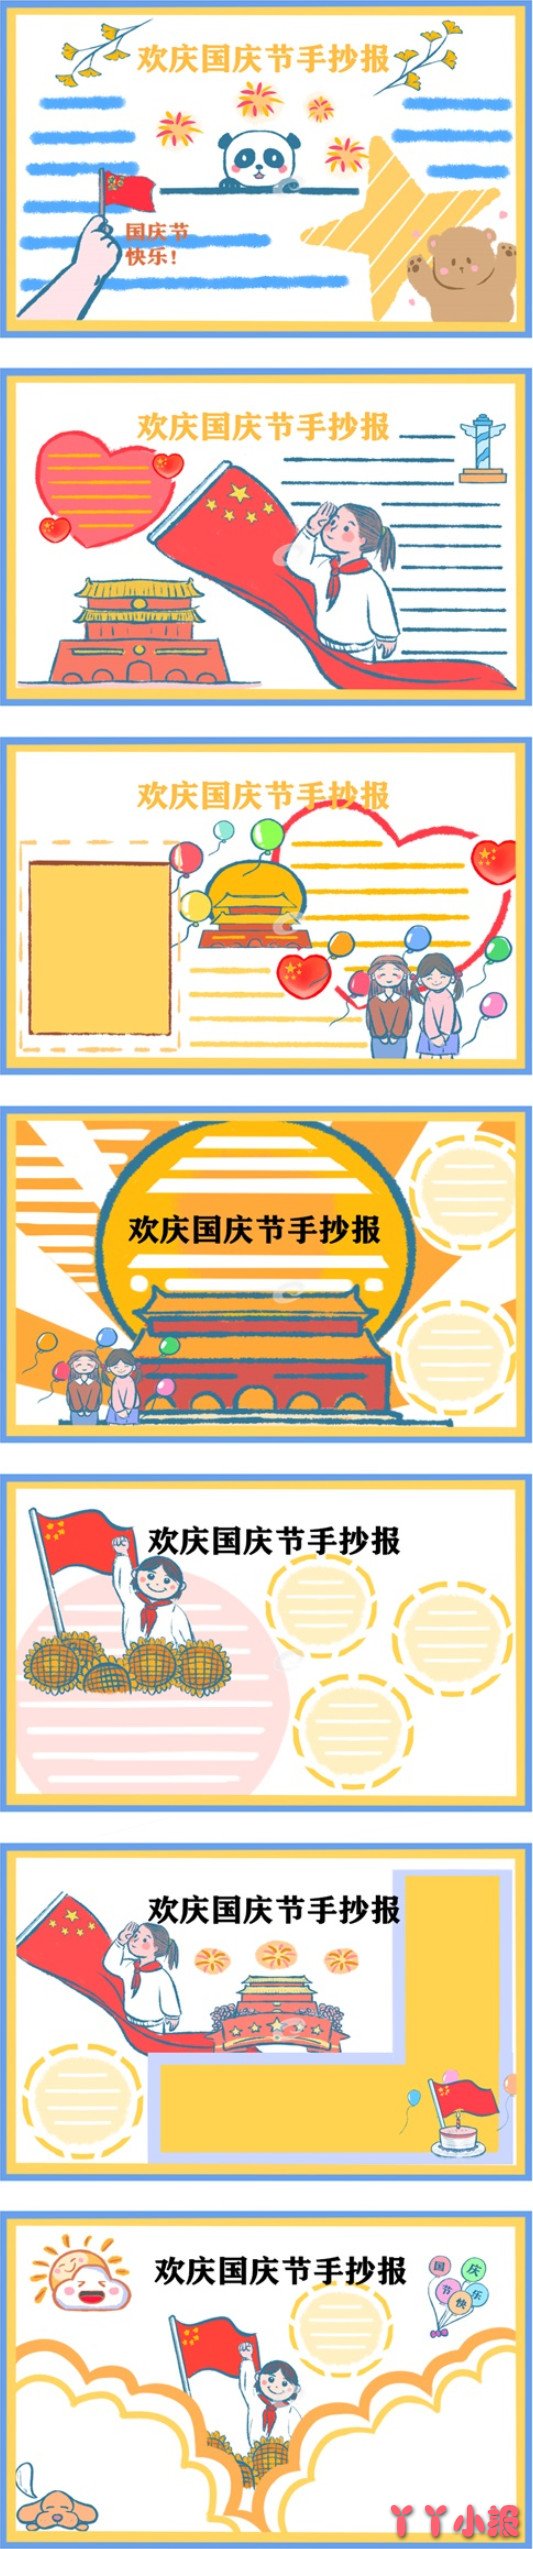 小学生欢庆国庆节手抄报模板怎么画简单漂亮